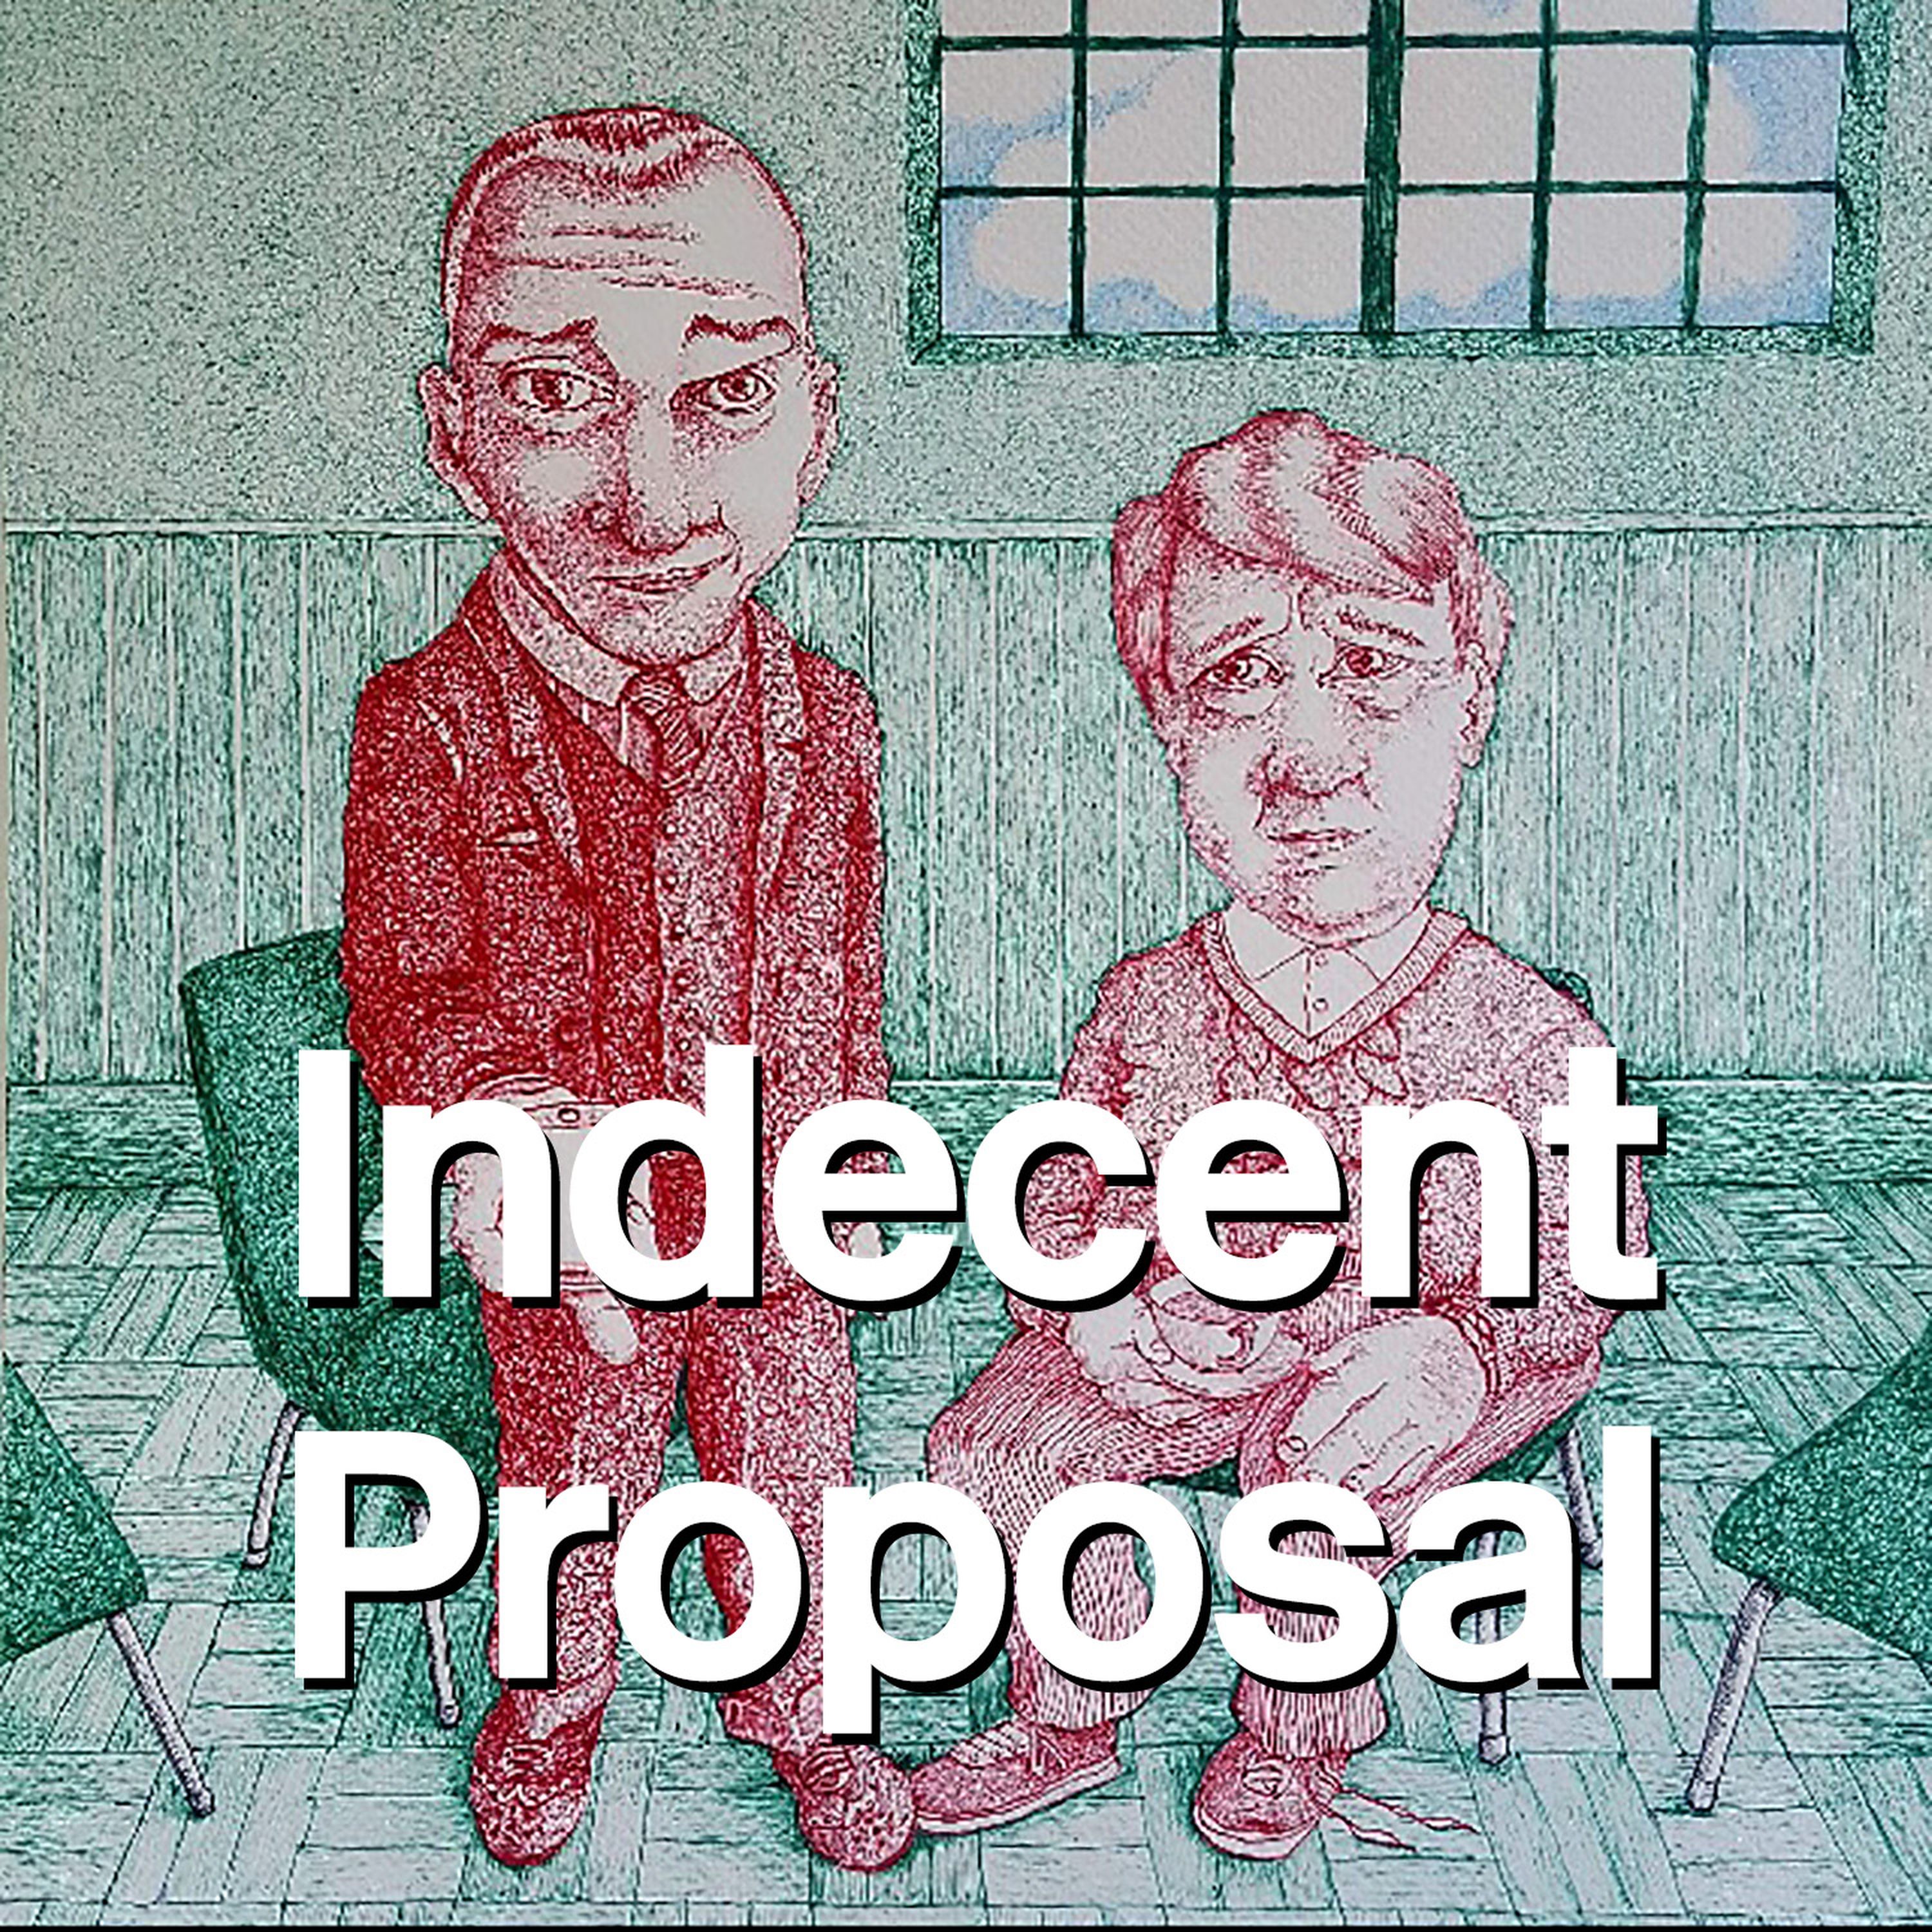 11: Indecent Proposal